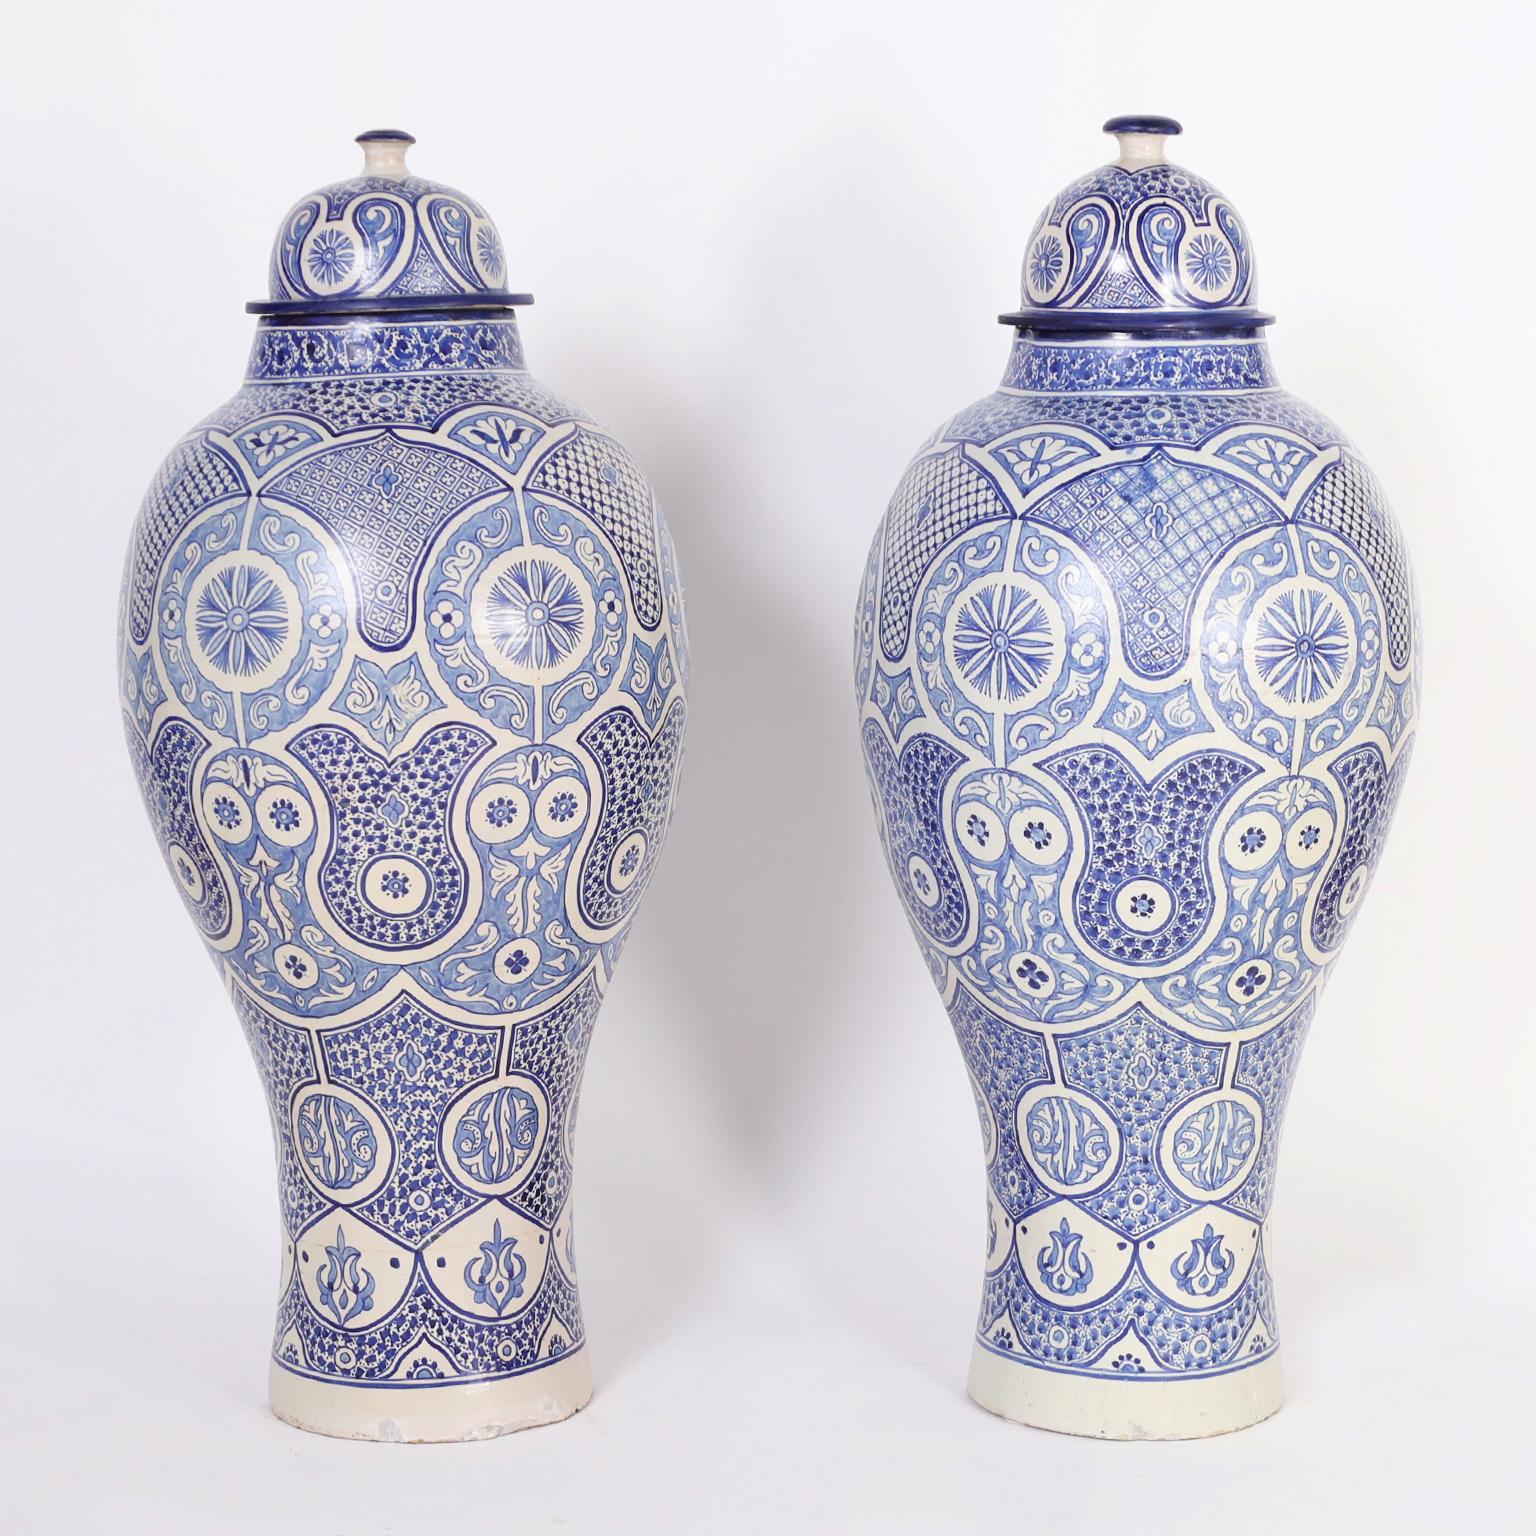 Beeindruckendes Paar marokkanischer Urnen in Palastgröße mit Deckel aus Terrakotta in klassischer Form mit unverwechselbaren handverzierten mediterranen Motiven in verführerischen Blautönen. 